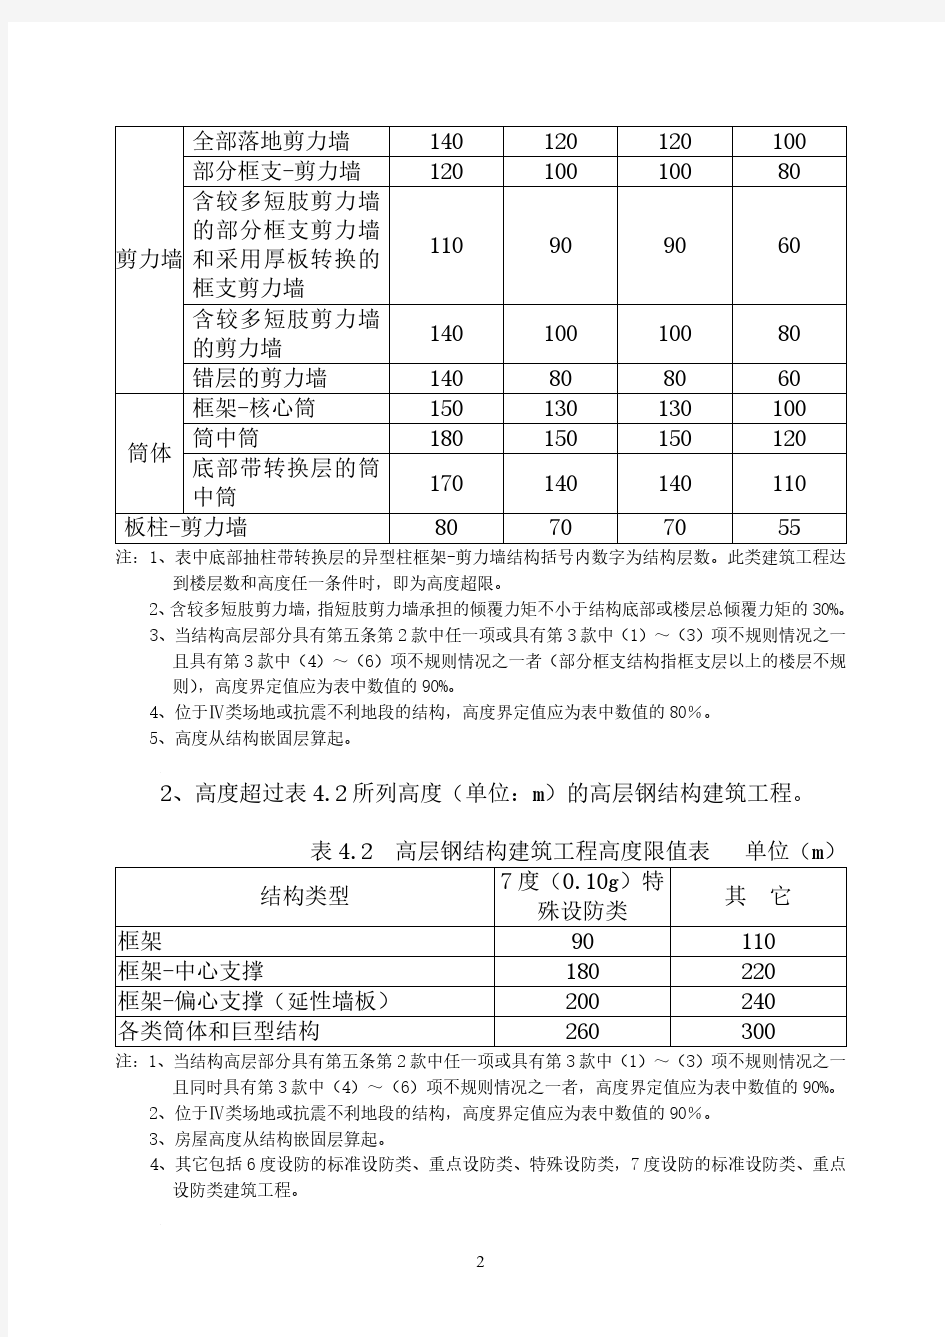 重庆市超限高层建筑工程界定规定 